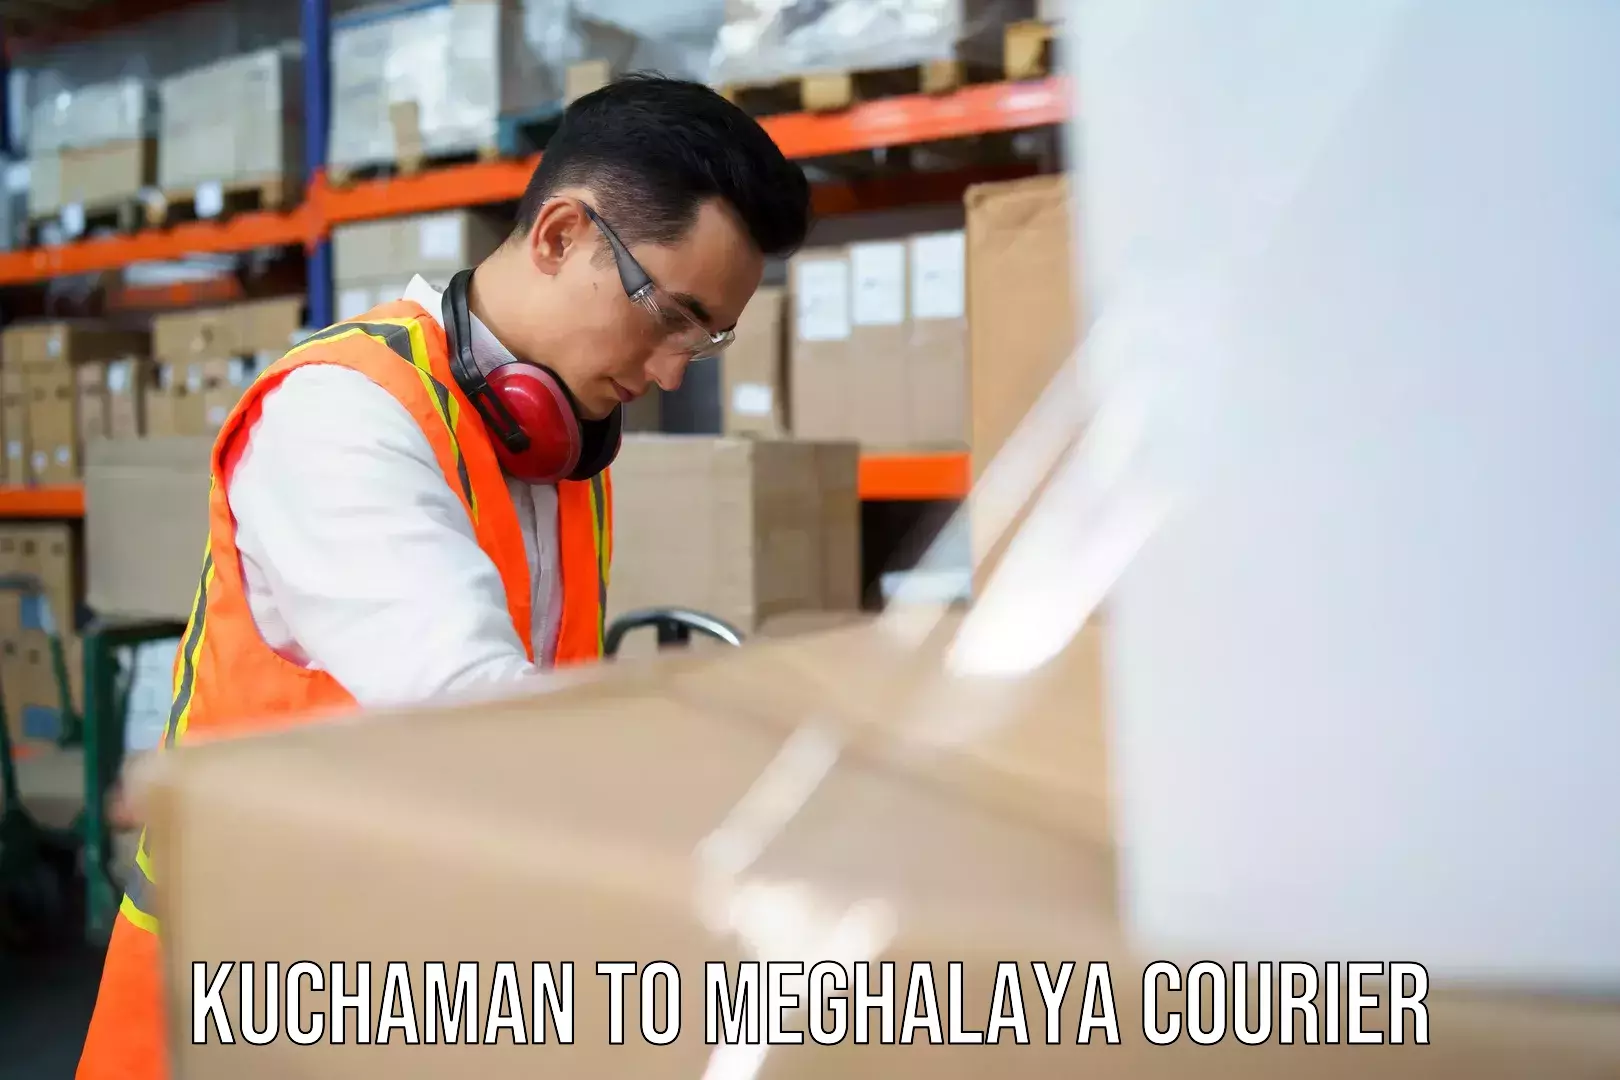 Modern delivery methods Kuchaman to Meghalaya